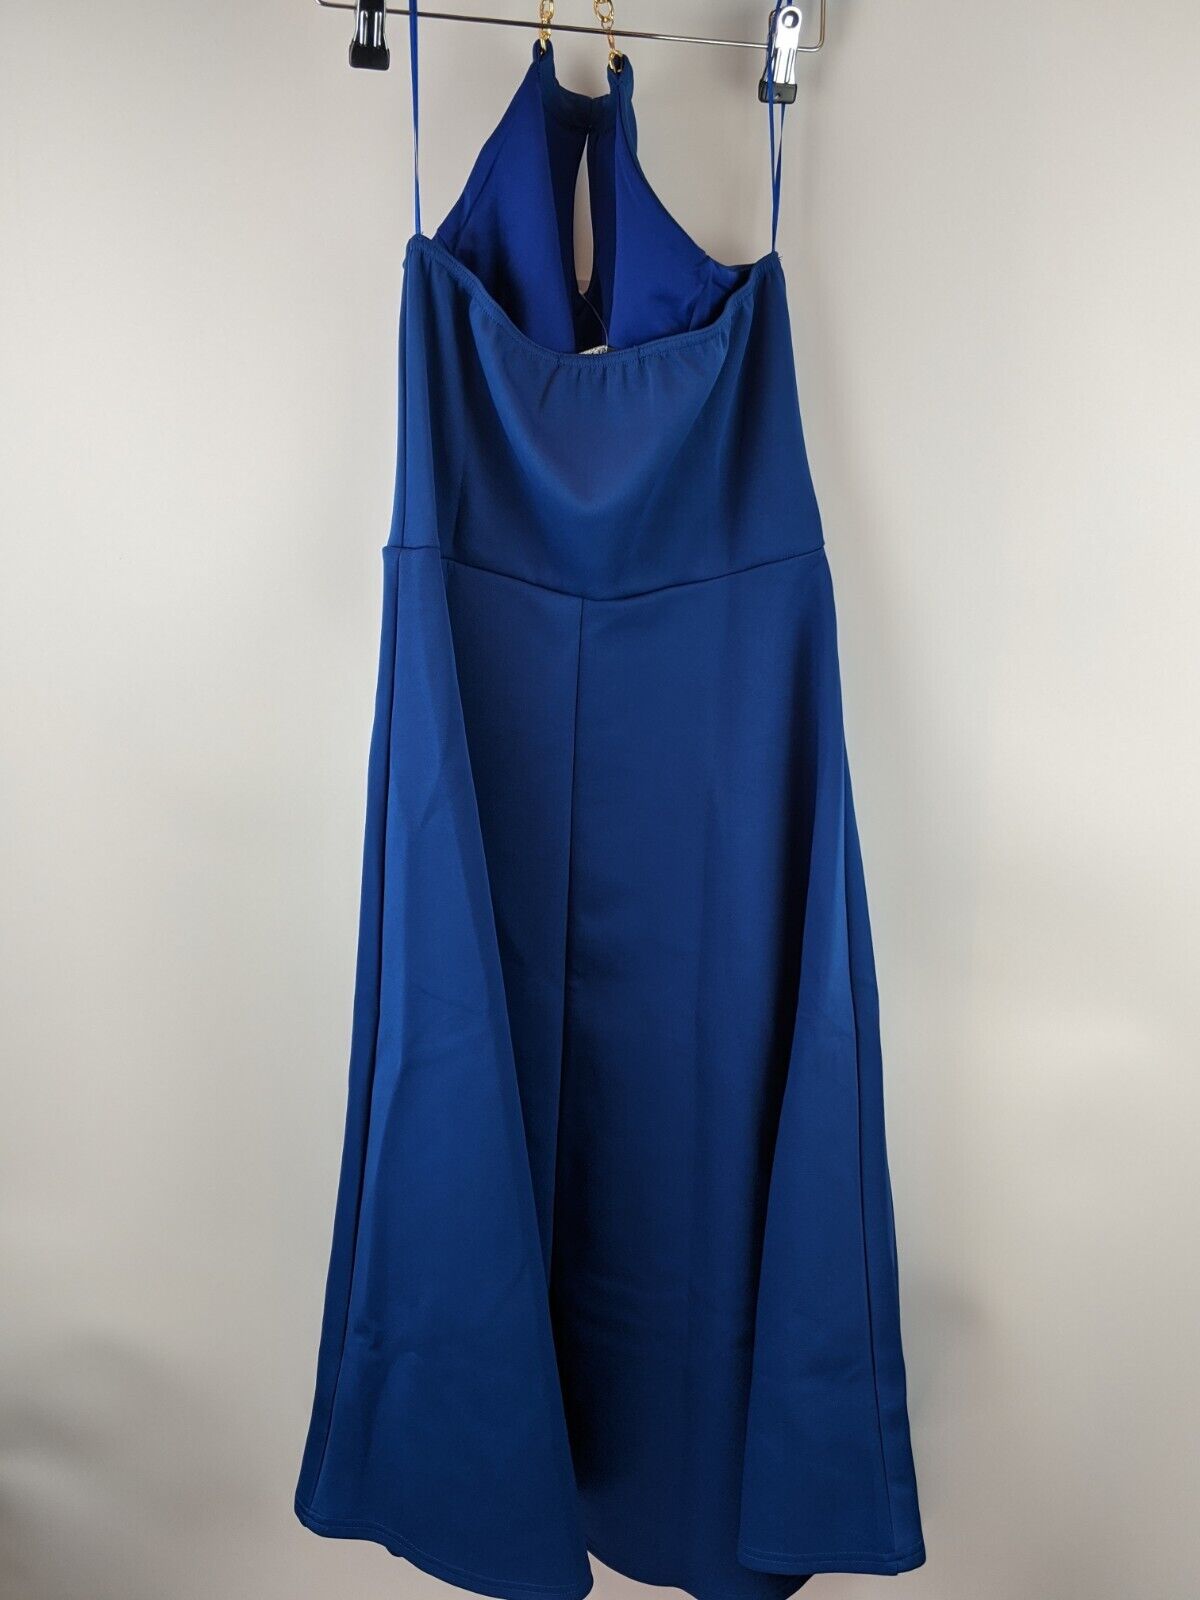 Quiz Blue Scuba Keyhole Chain Detail Dip Hem Dress Size 12.